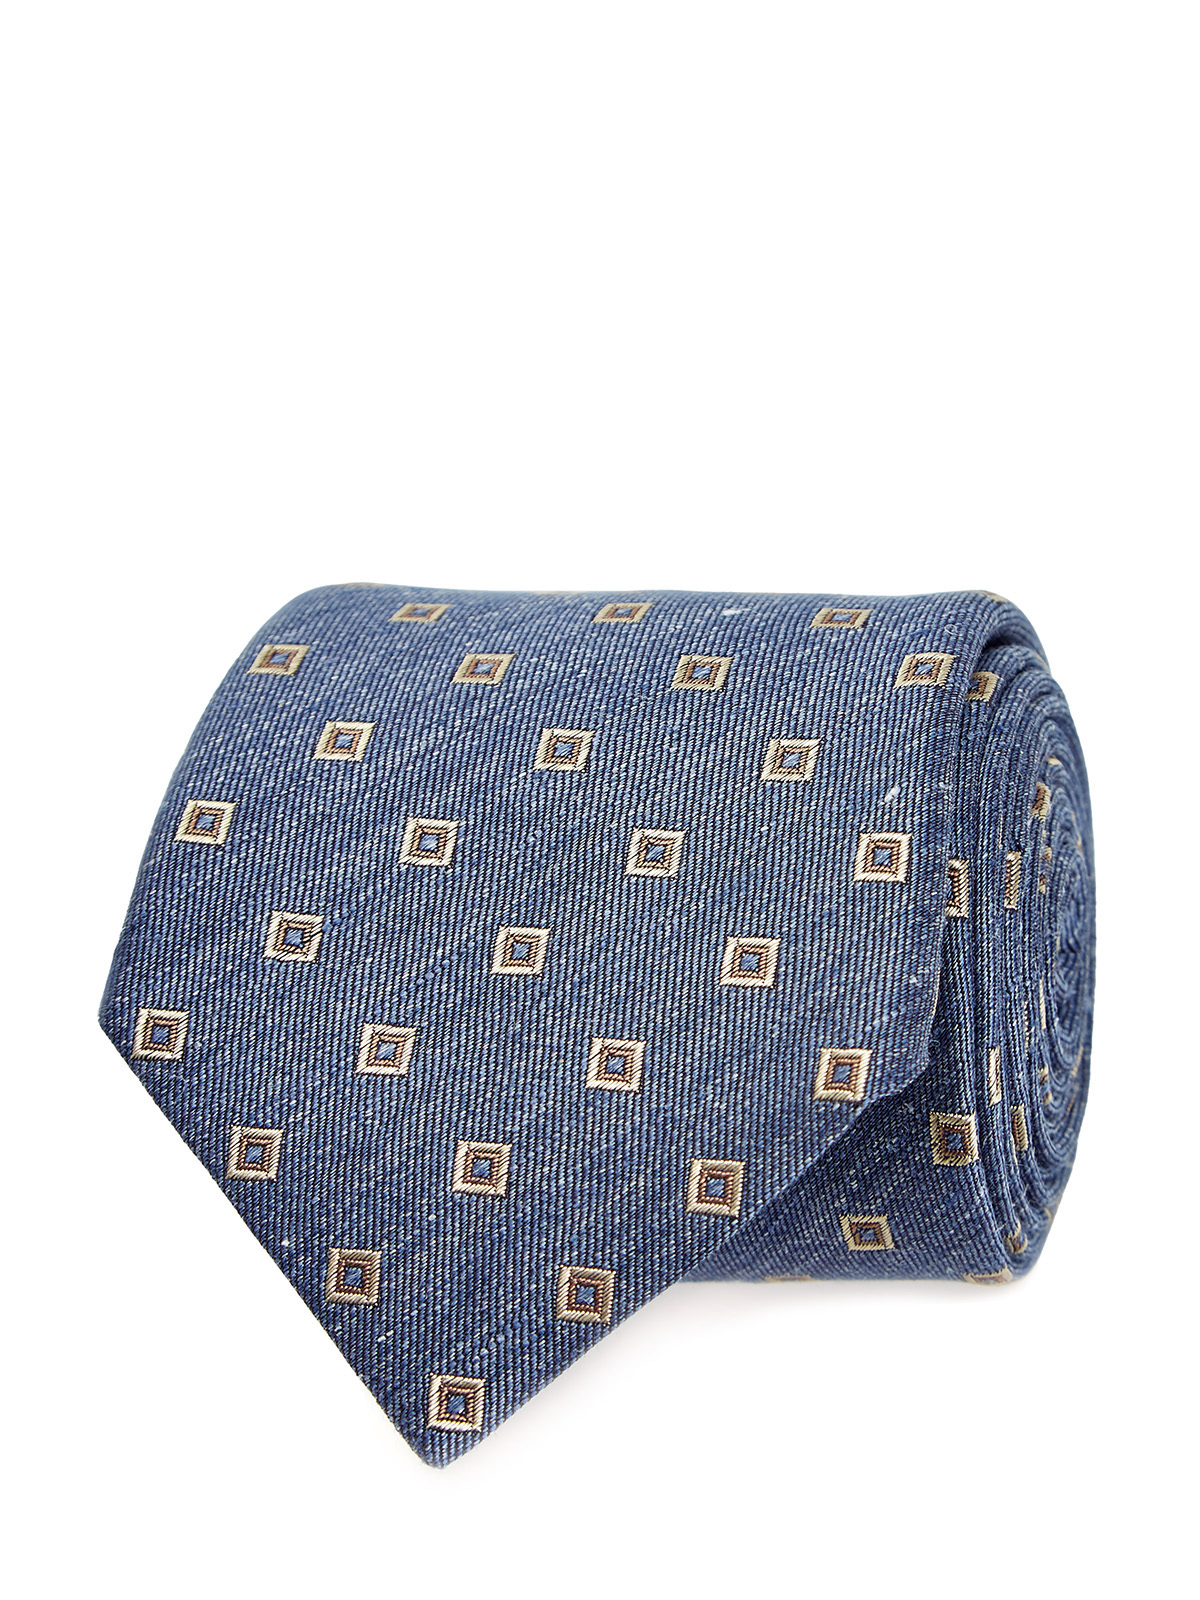 Шелковый галстук с вышитым жаккардовым узором